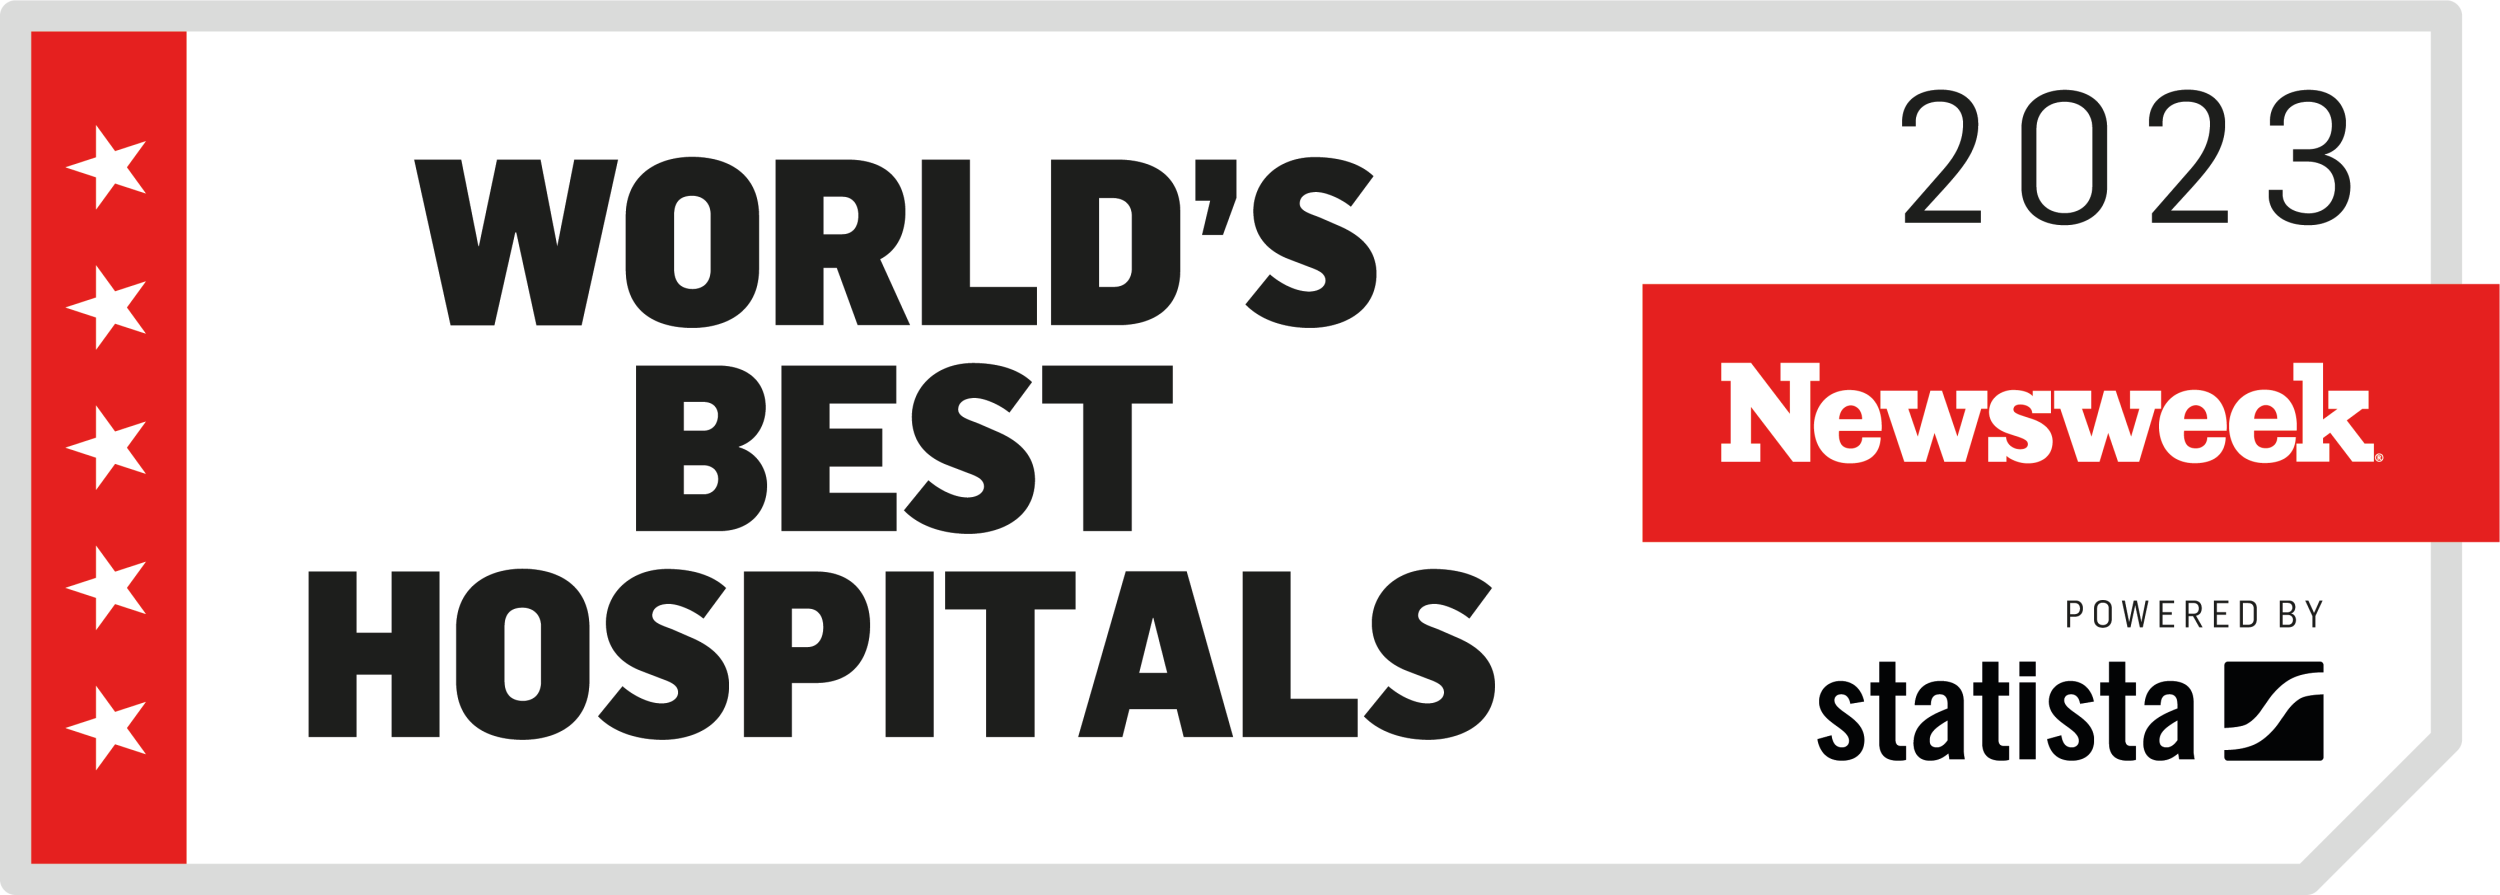 Worlds Best Hospitals 2023 